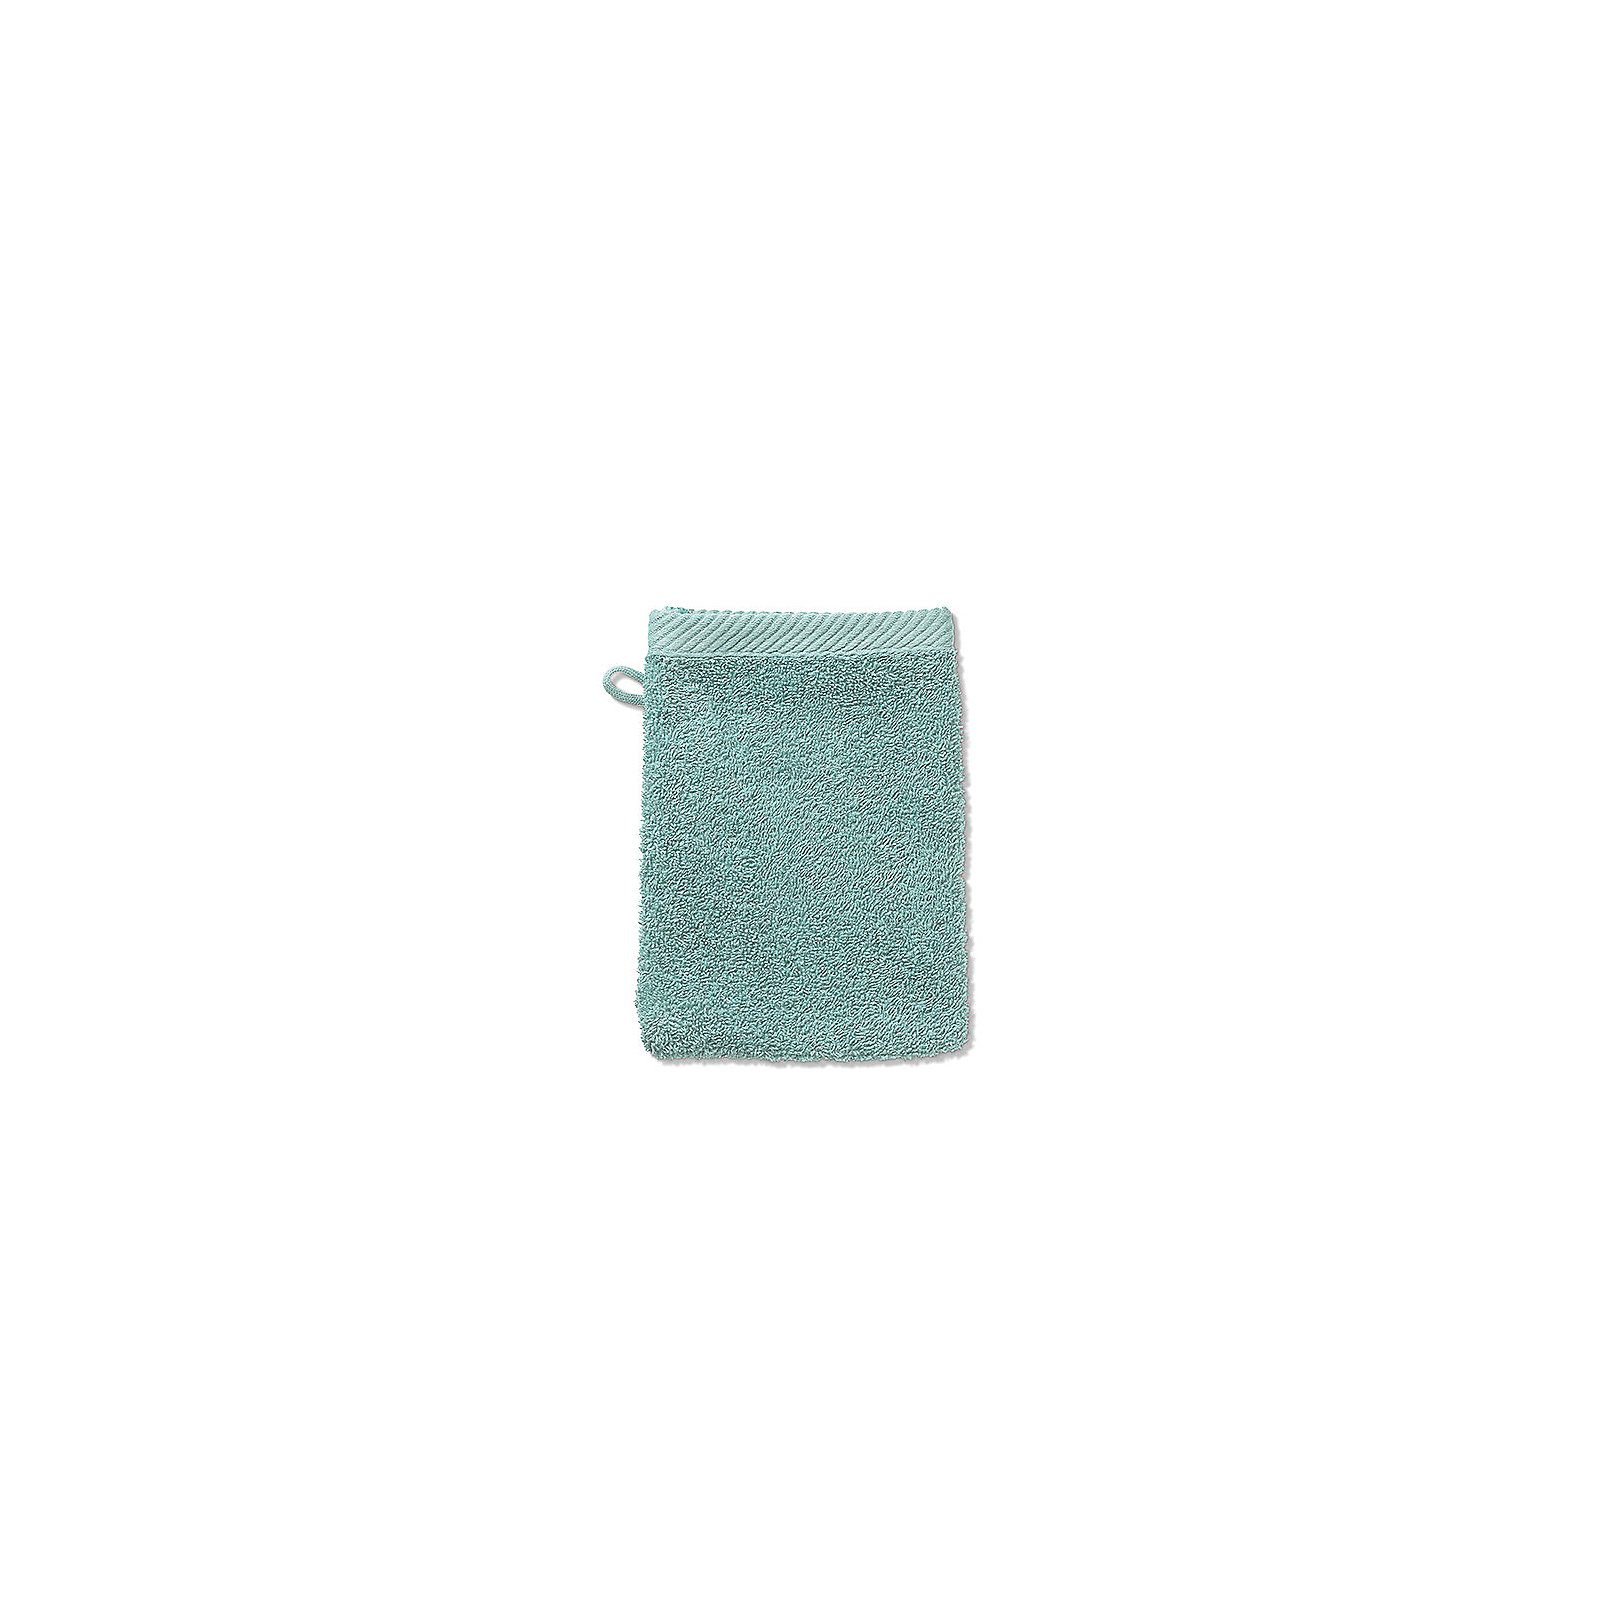 Waschhandschuh Ladessa 100% Baumwolle minzgrün 15,0x21,0 cm